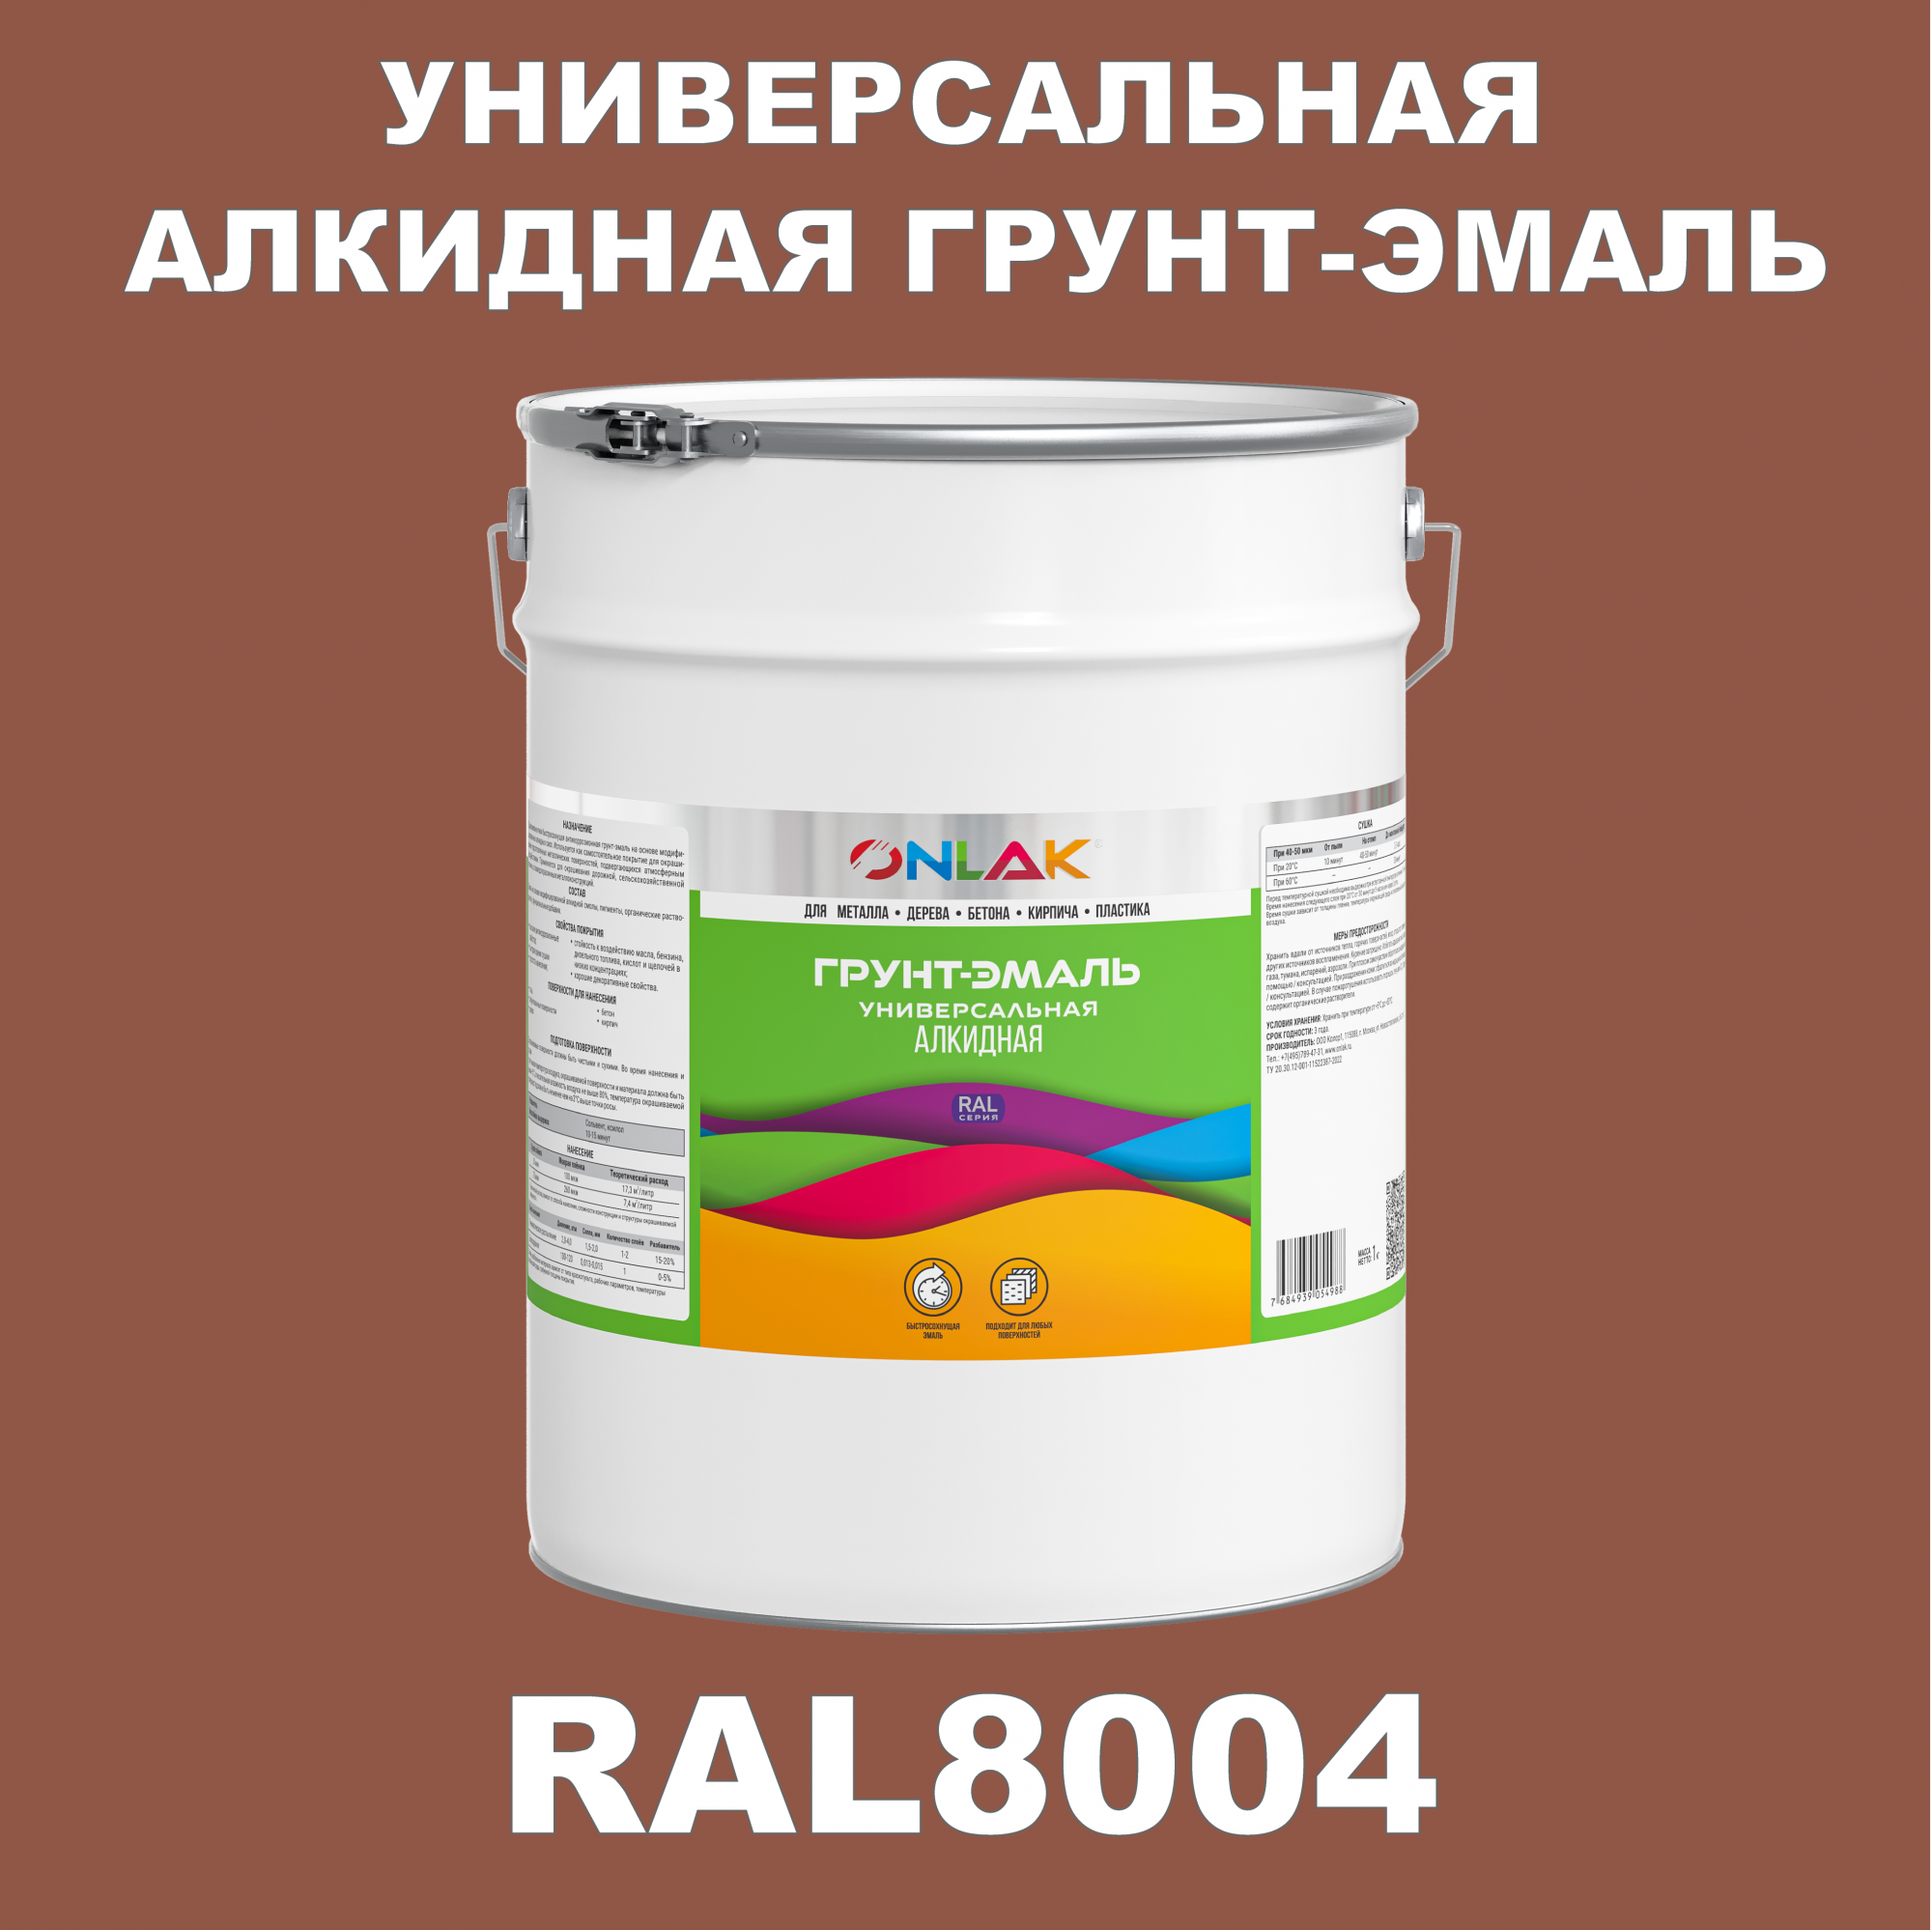 Грунт-эмаль ONLAK 1К RAL8004 антикоррозионная алкидная по металлу по ржавчине 20 кг грунт эмаль yollo по ржавчине алкидная серая 0 9 кг